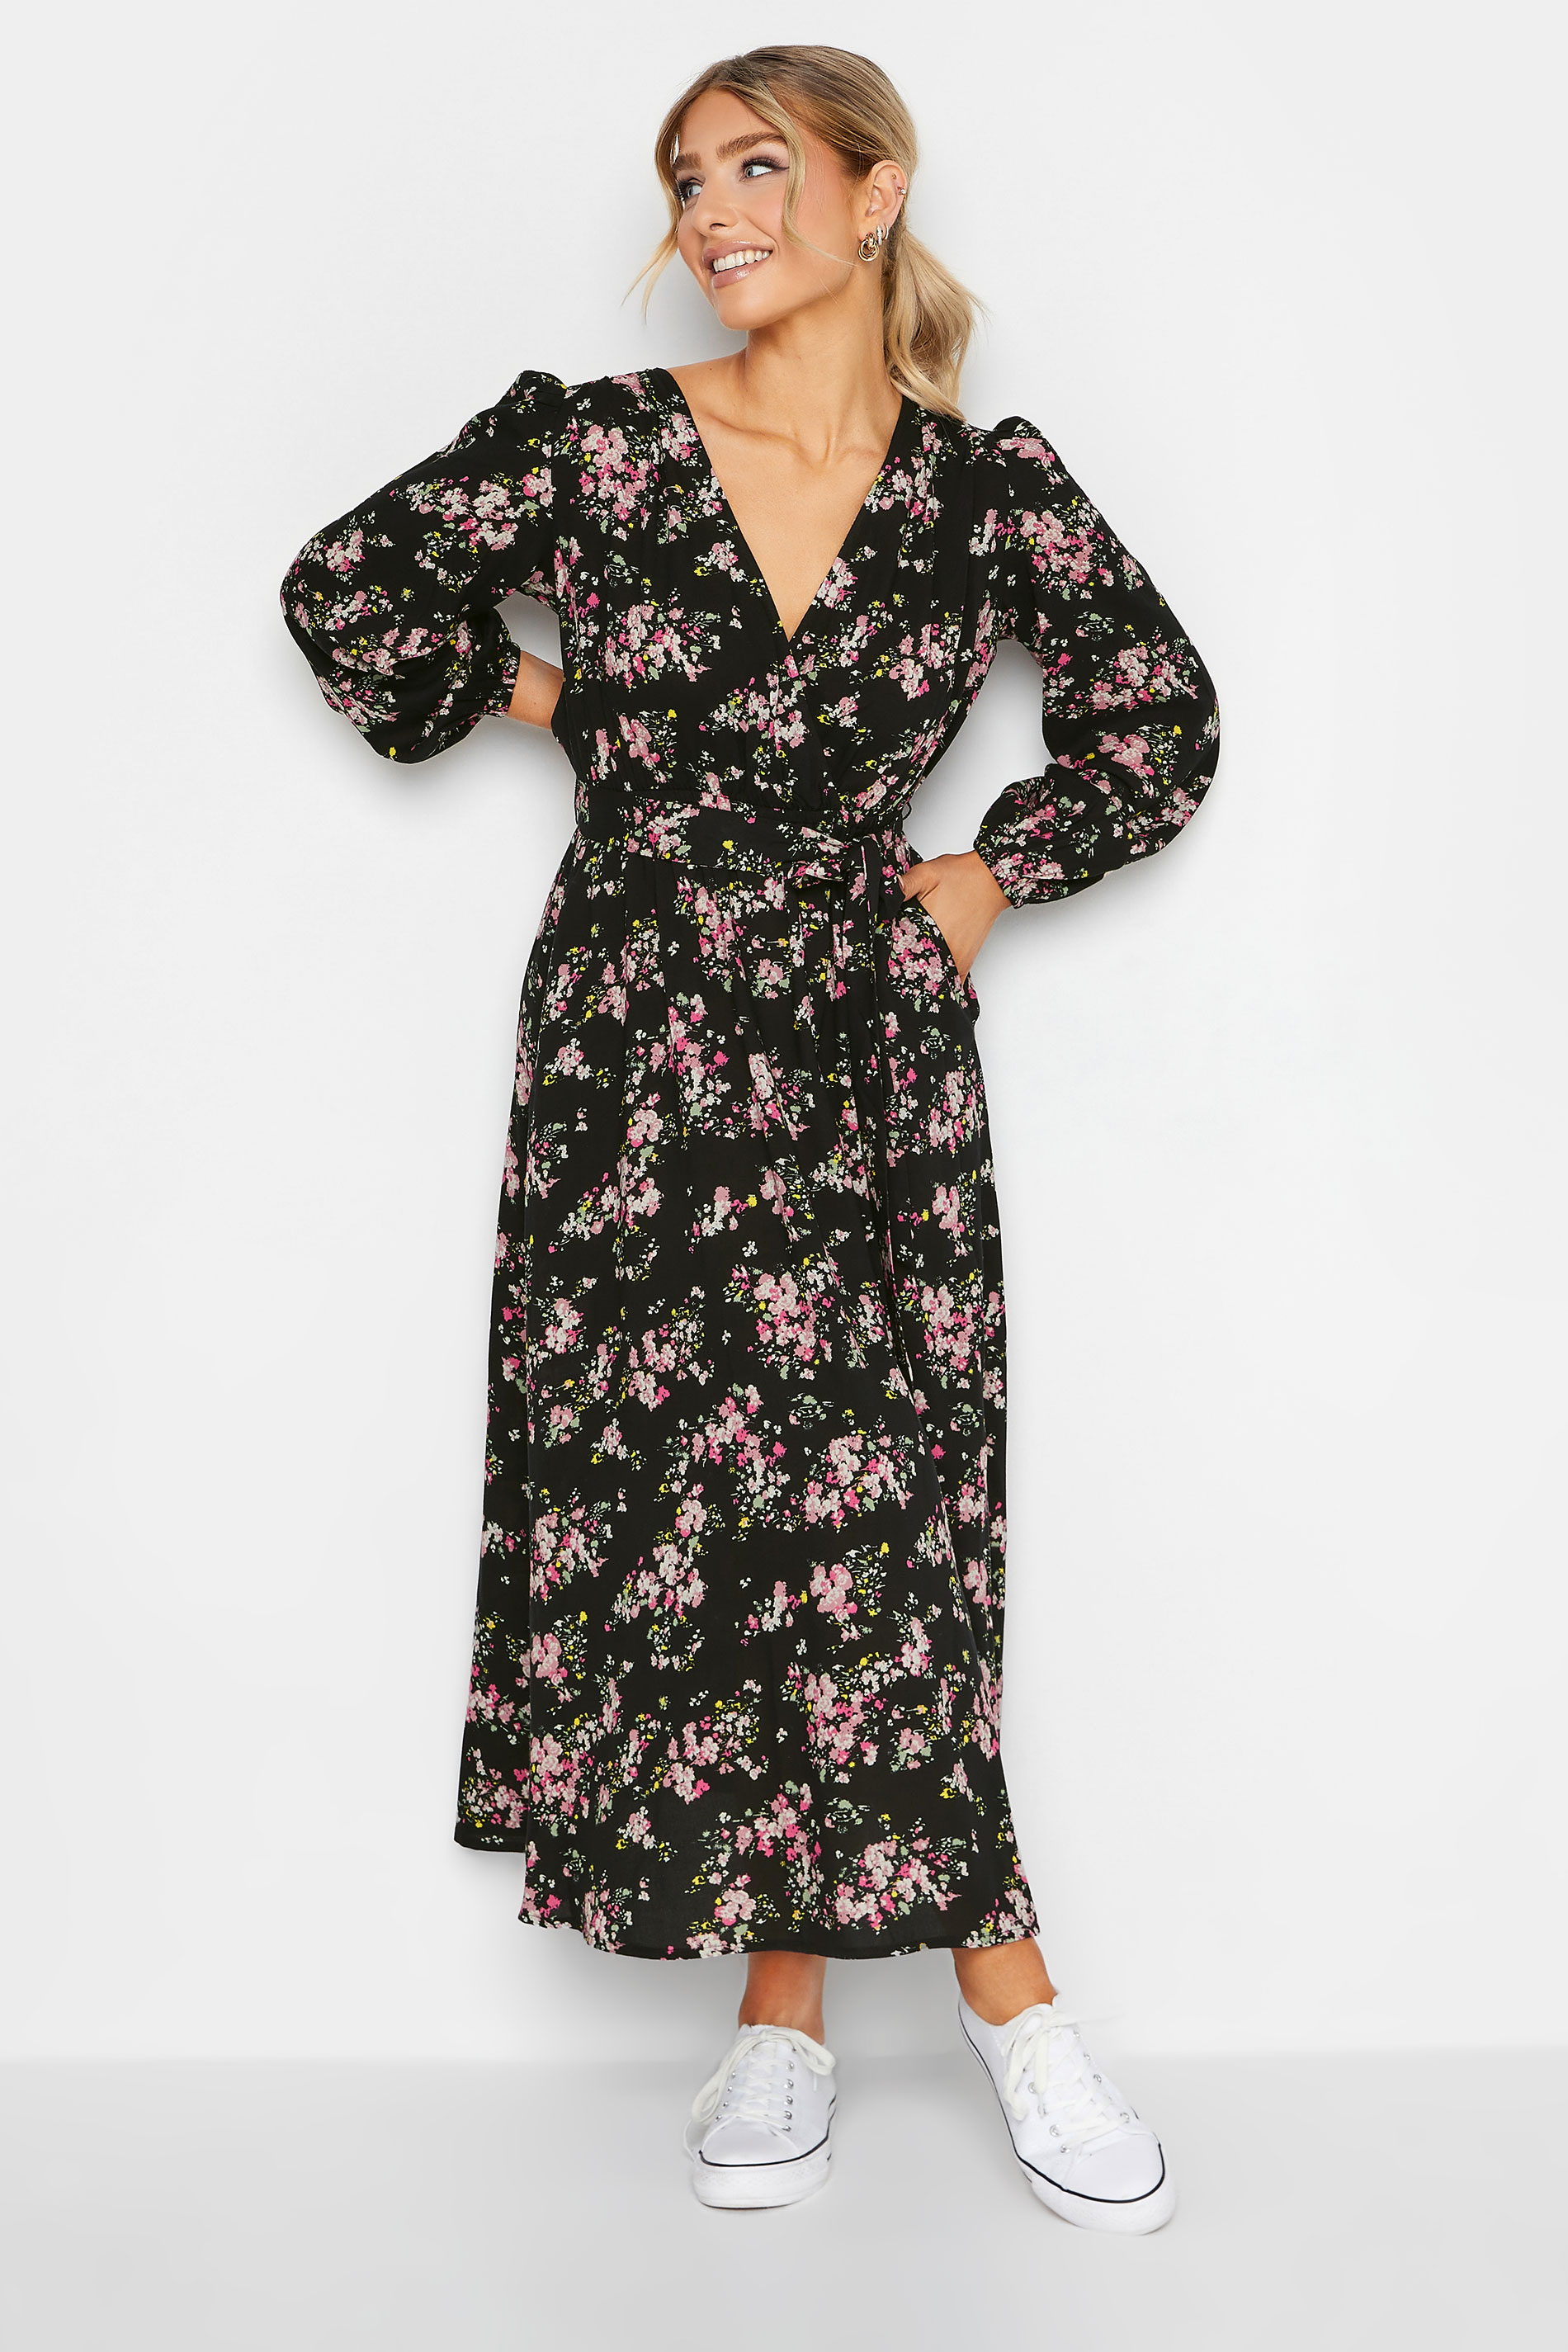 M&Co Black & Pink Floral Print Wrap Front Dress | M&Co  2